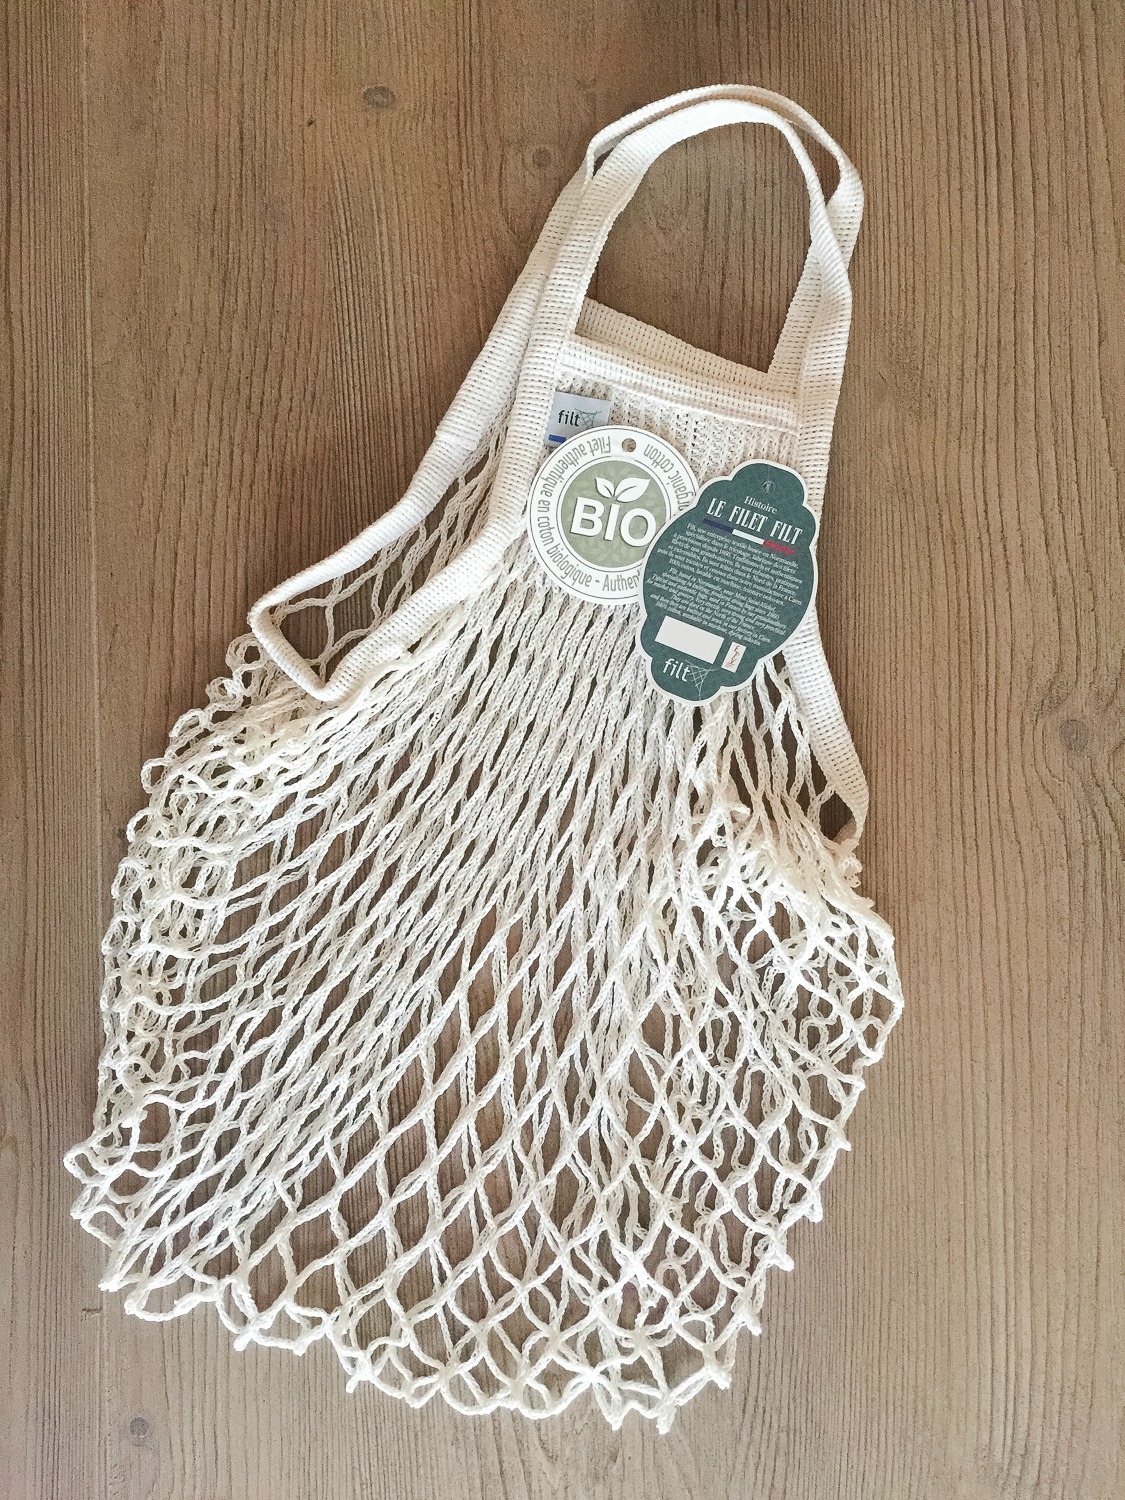 Organic cotton net shopping bag. Details at une femme d'un certain age.